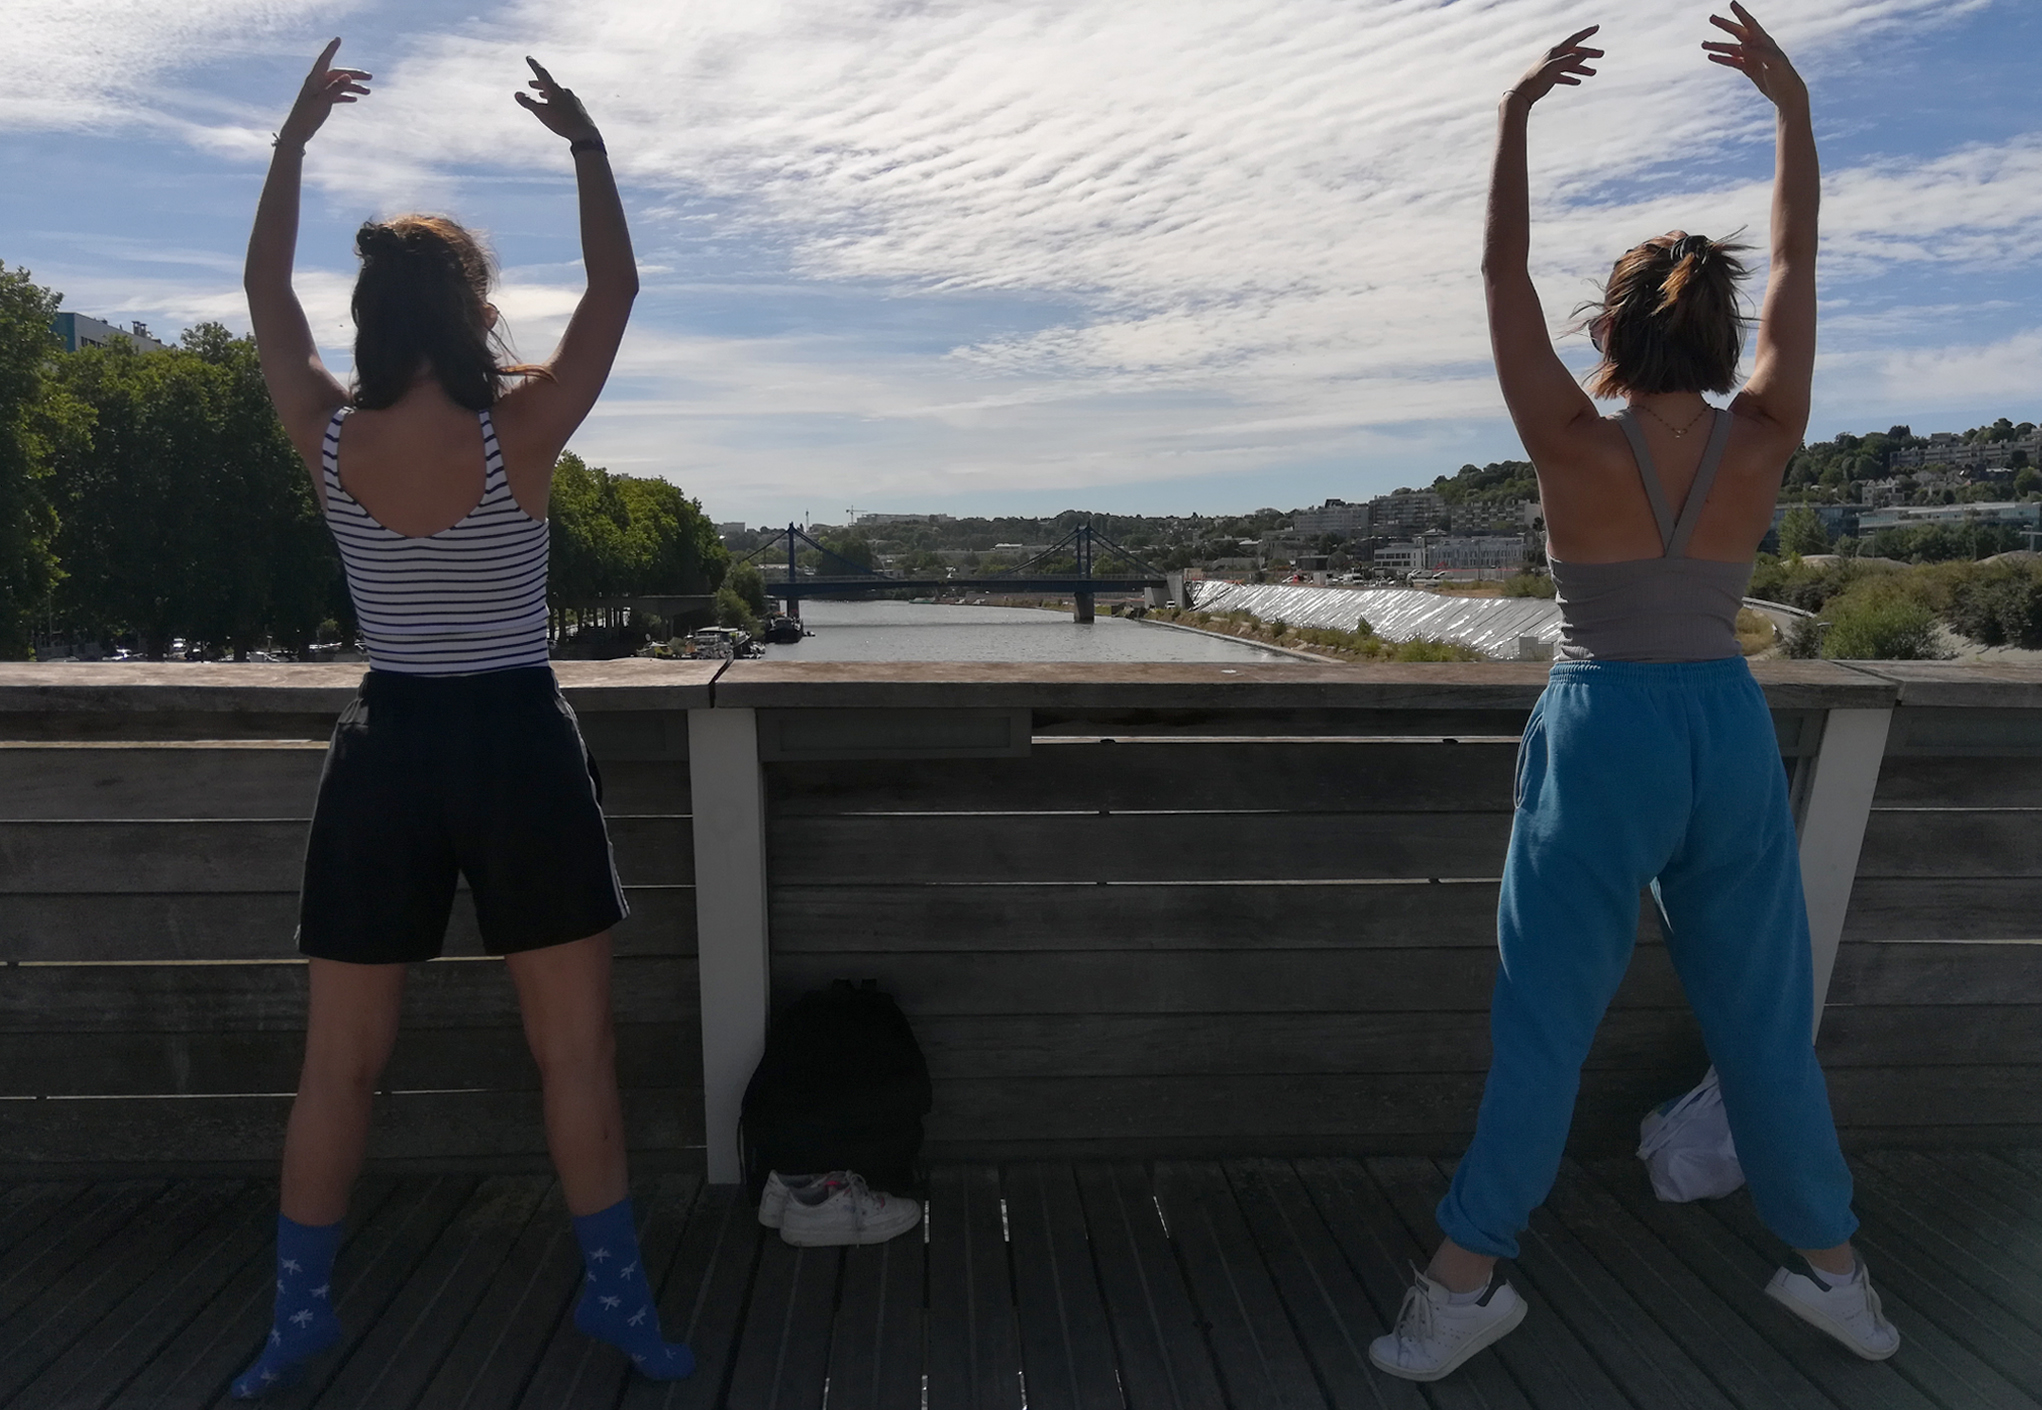 Danse à ciel ouvert - élèves de 3ème cycle de la classe de danse du conservatoire Niedermeyer à Issy-les-Moulineaux (Grand Paris Seine Ouest)